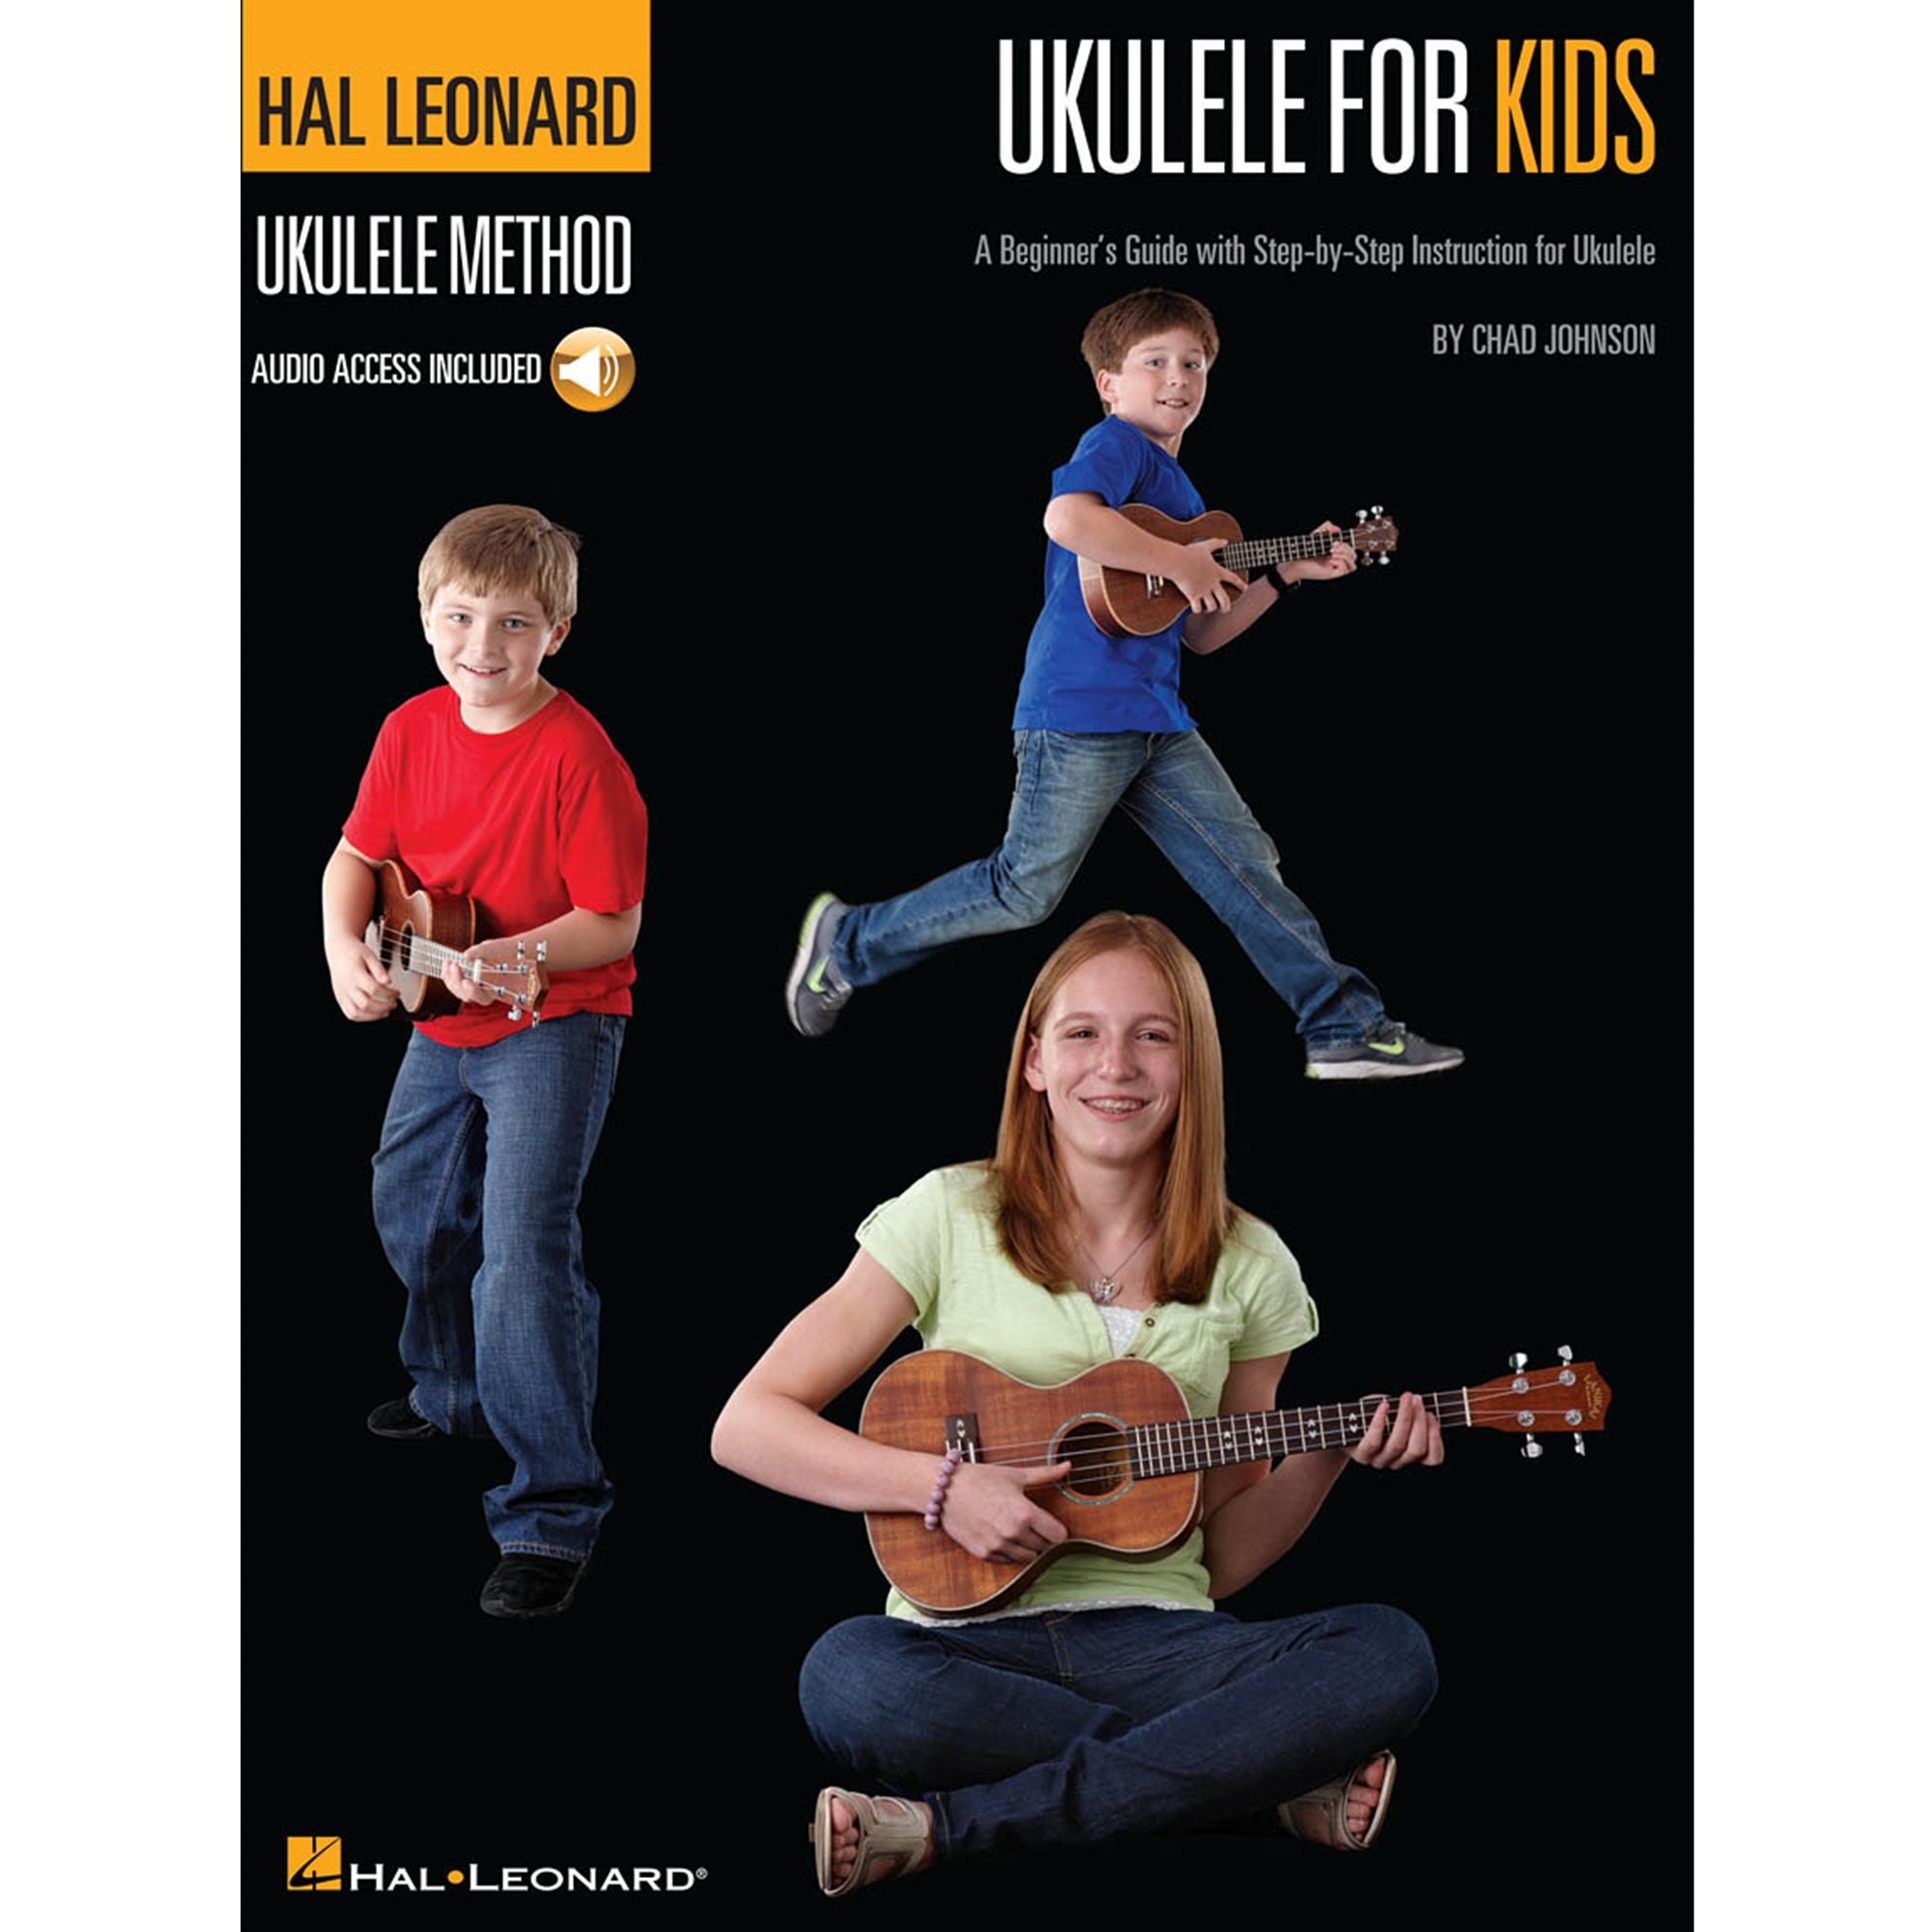 HAL LEONARD 696468 Ukulele for Kids - The Hal Leonard Ukulele Method